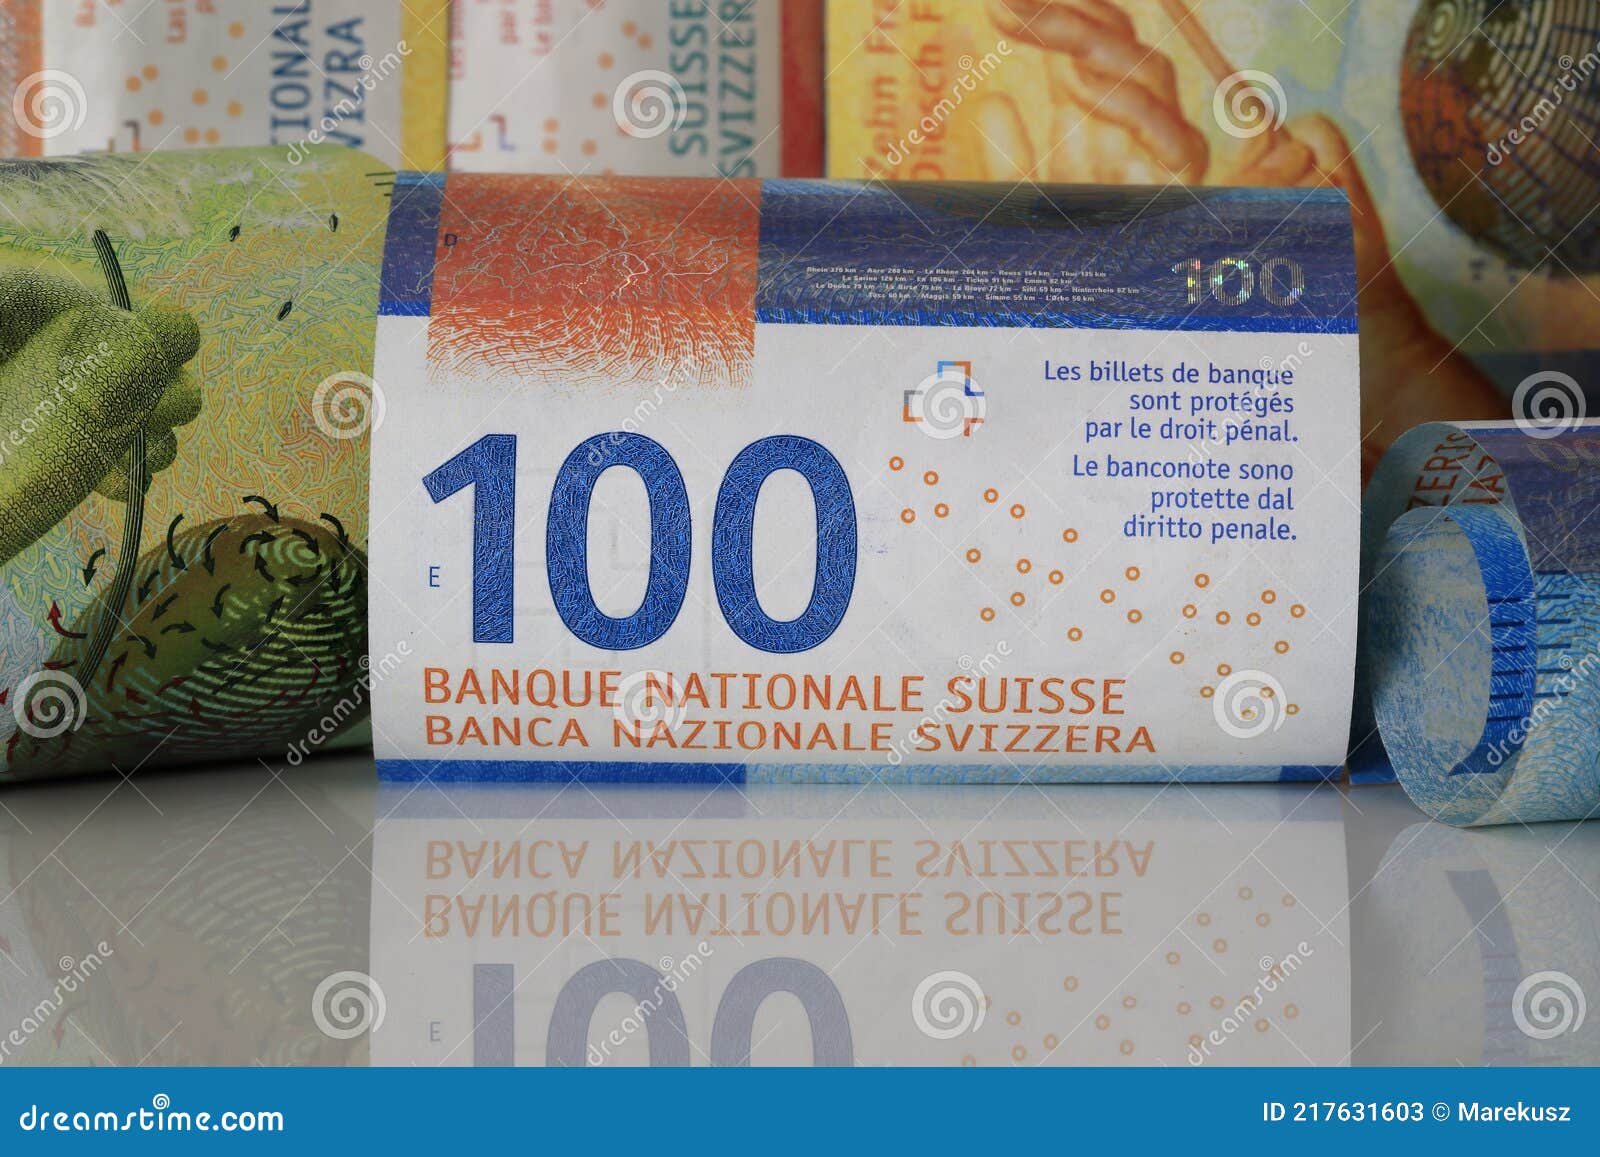 厉害了，这个国！世界上最先进的纸钱(瑞士法郎) - 知乎